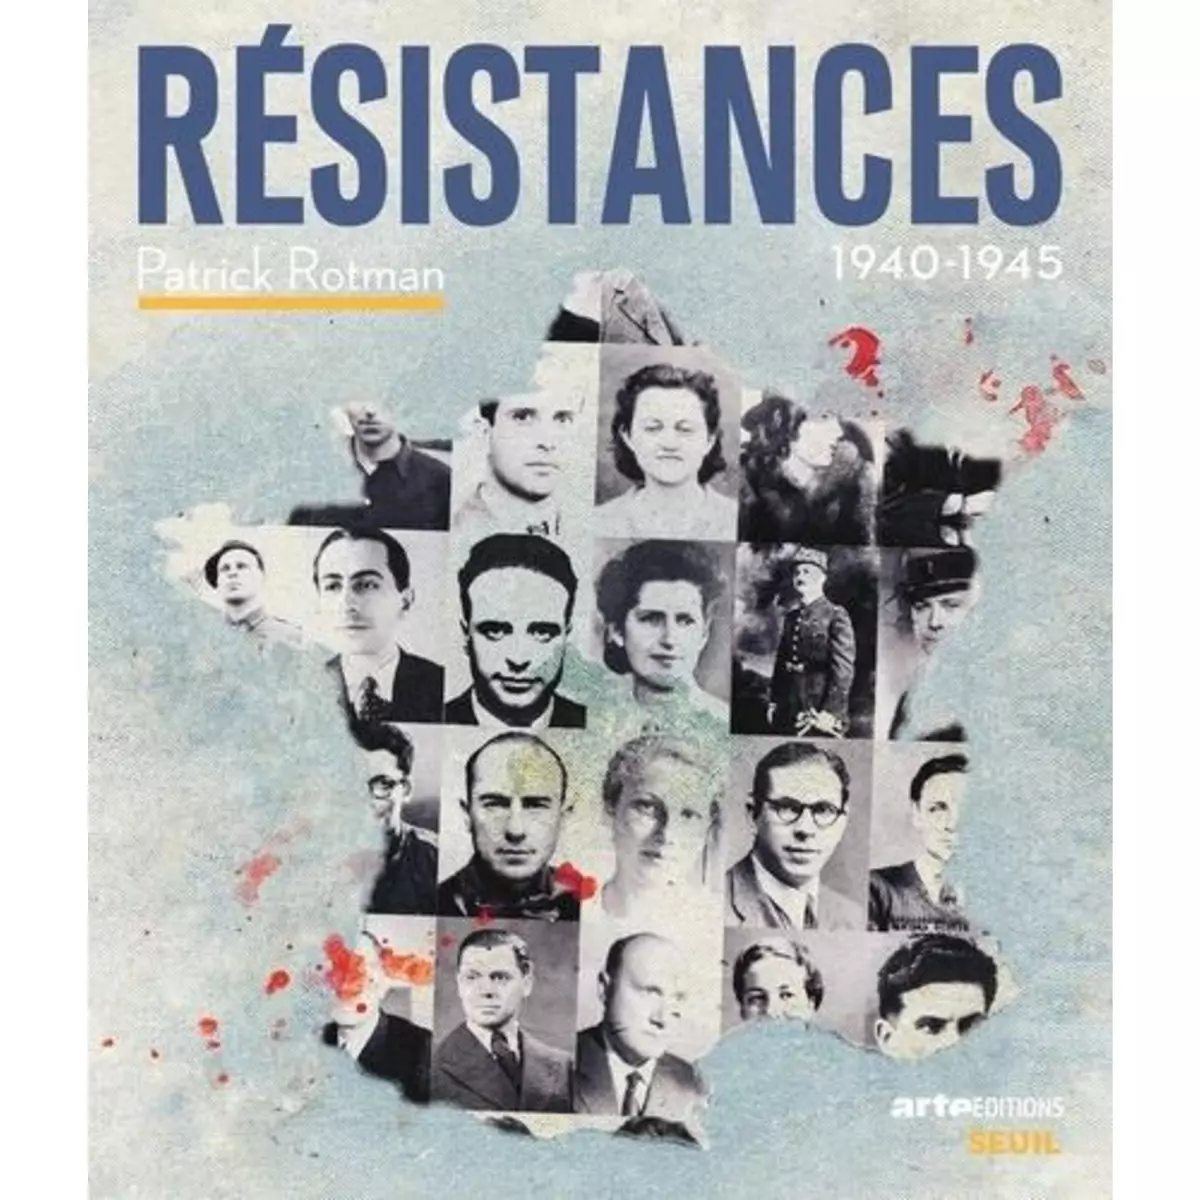  RESISTANCES. 1940-1945, Rotman Patrick